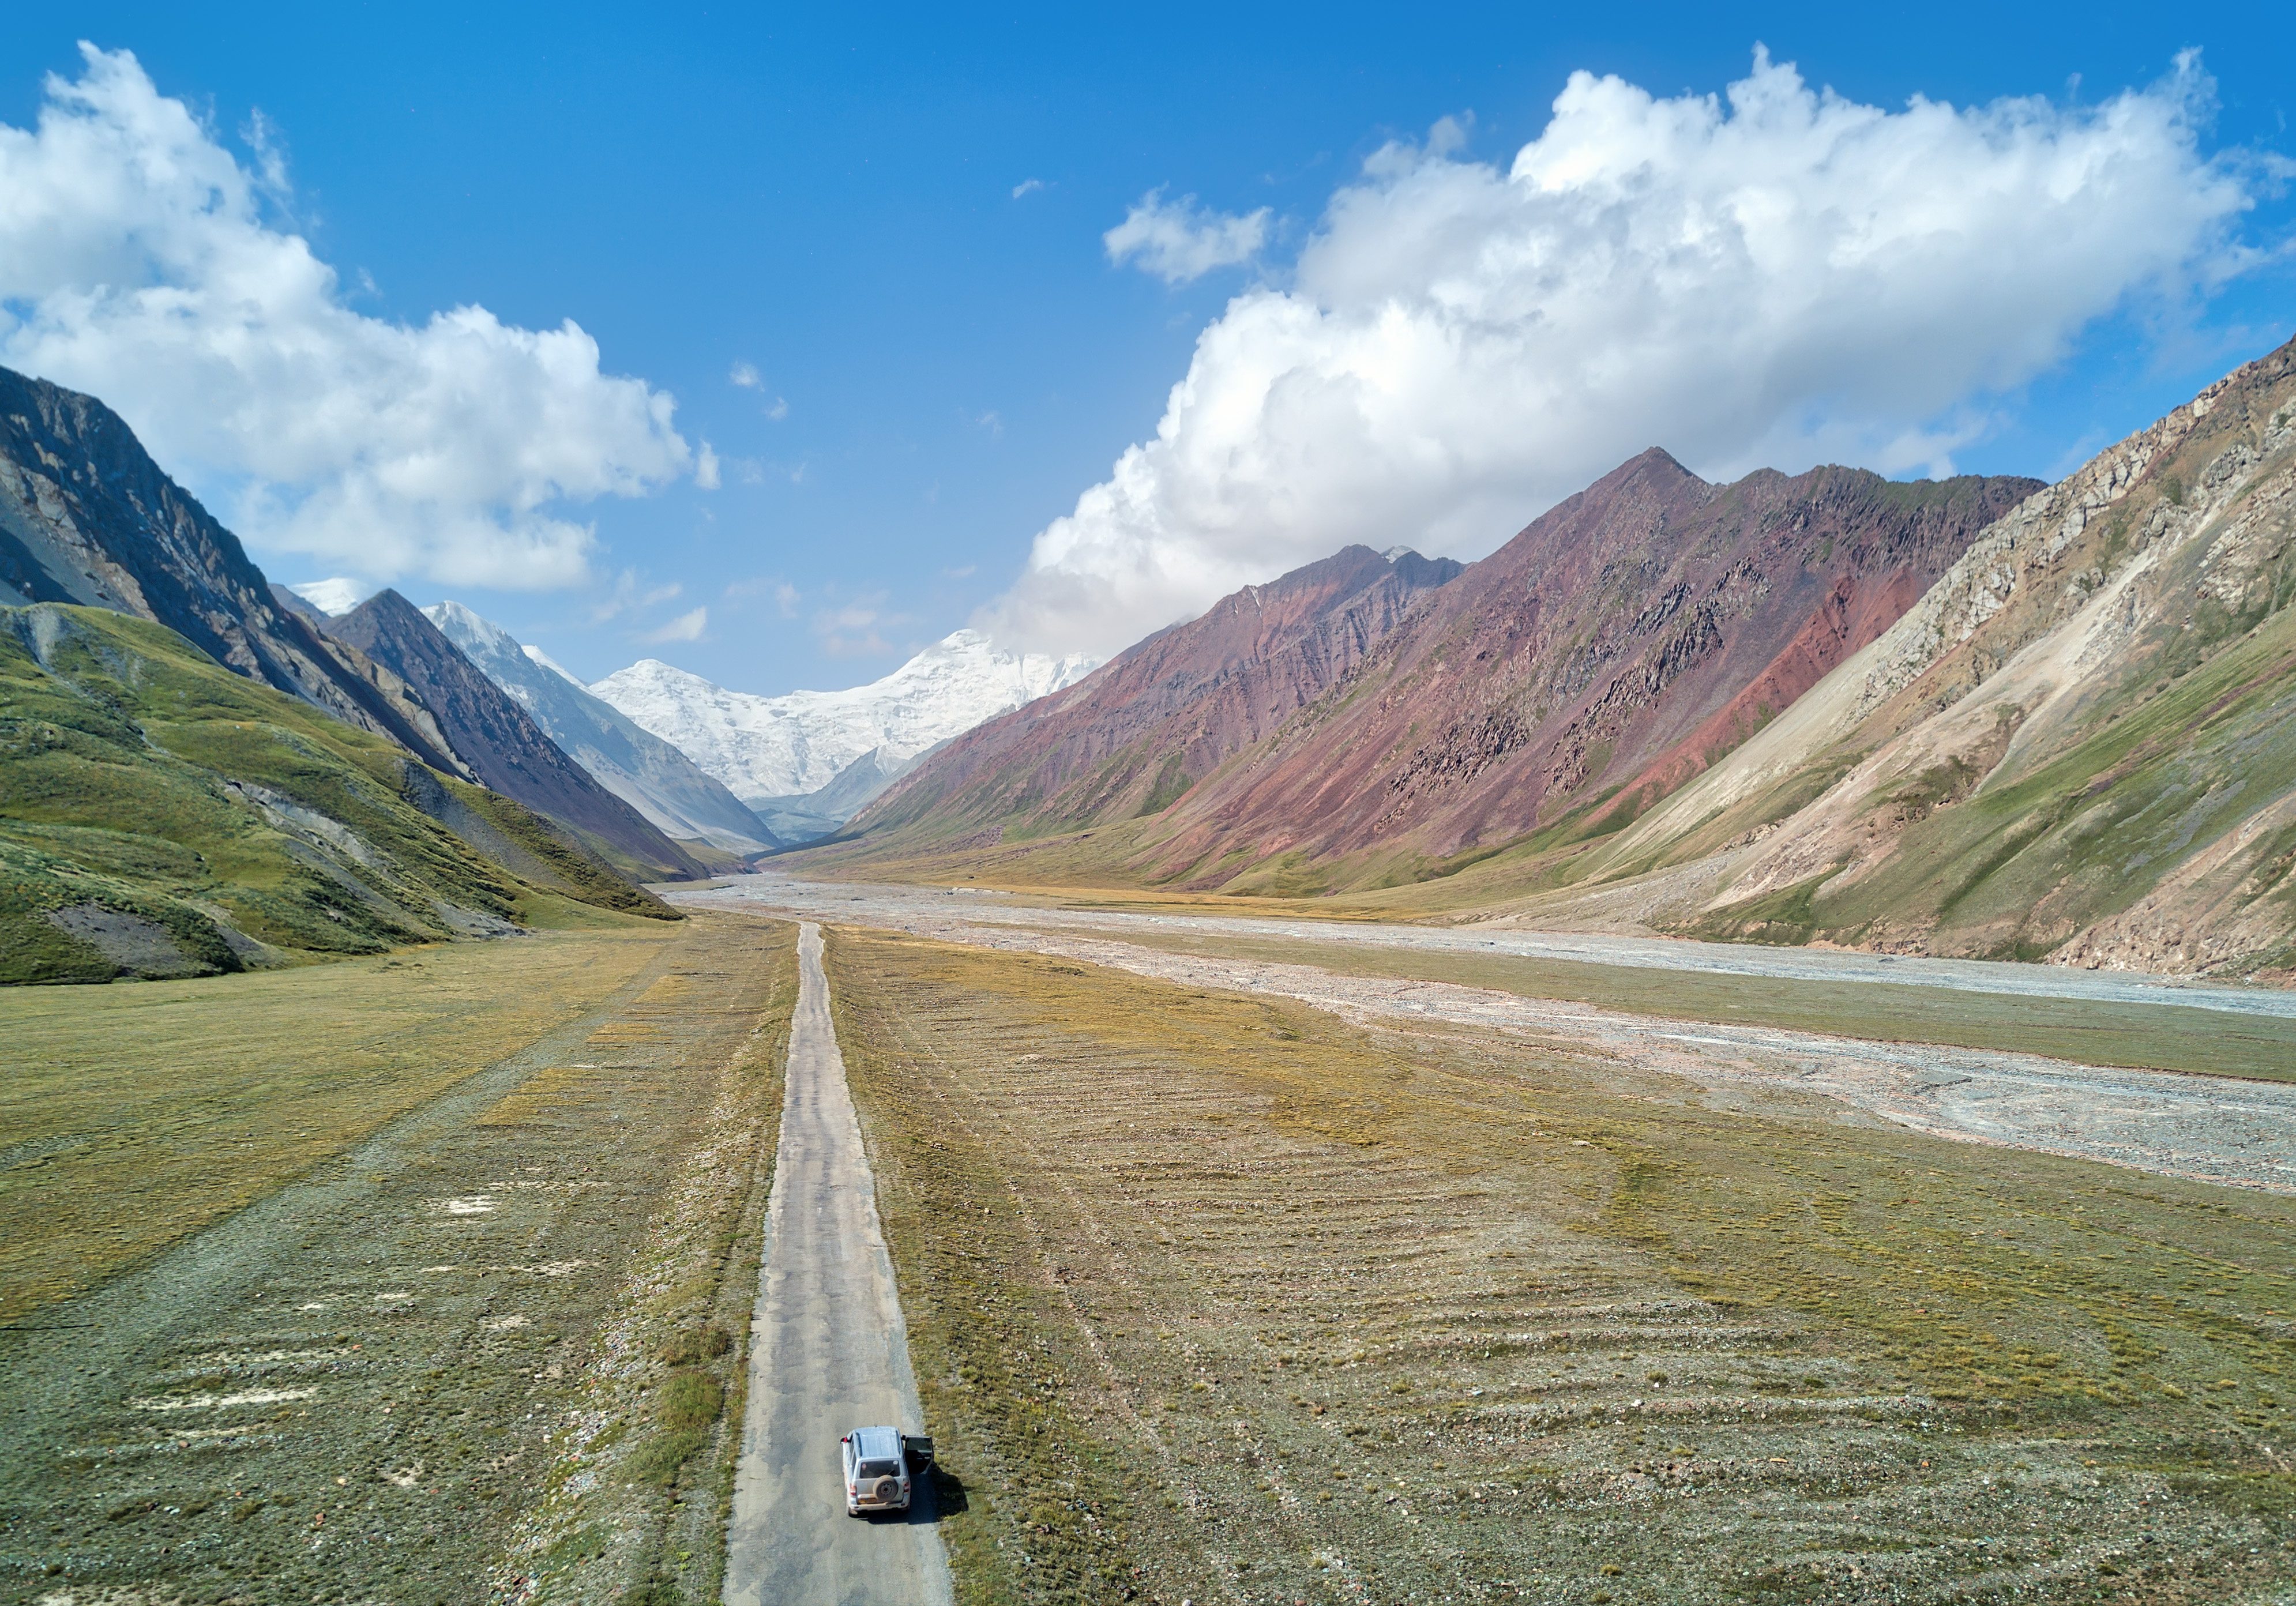 Kyzyl Art Pass between Kyrgyzstan and Tajikistan, 